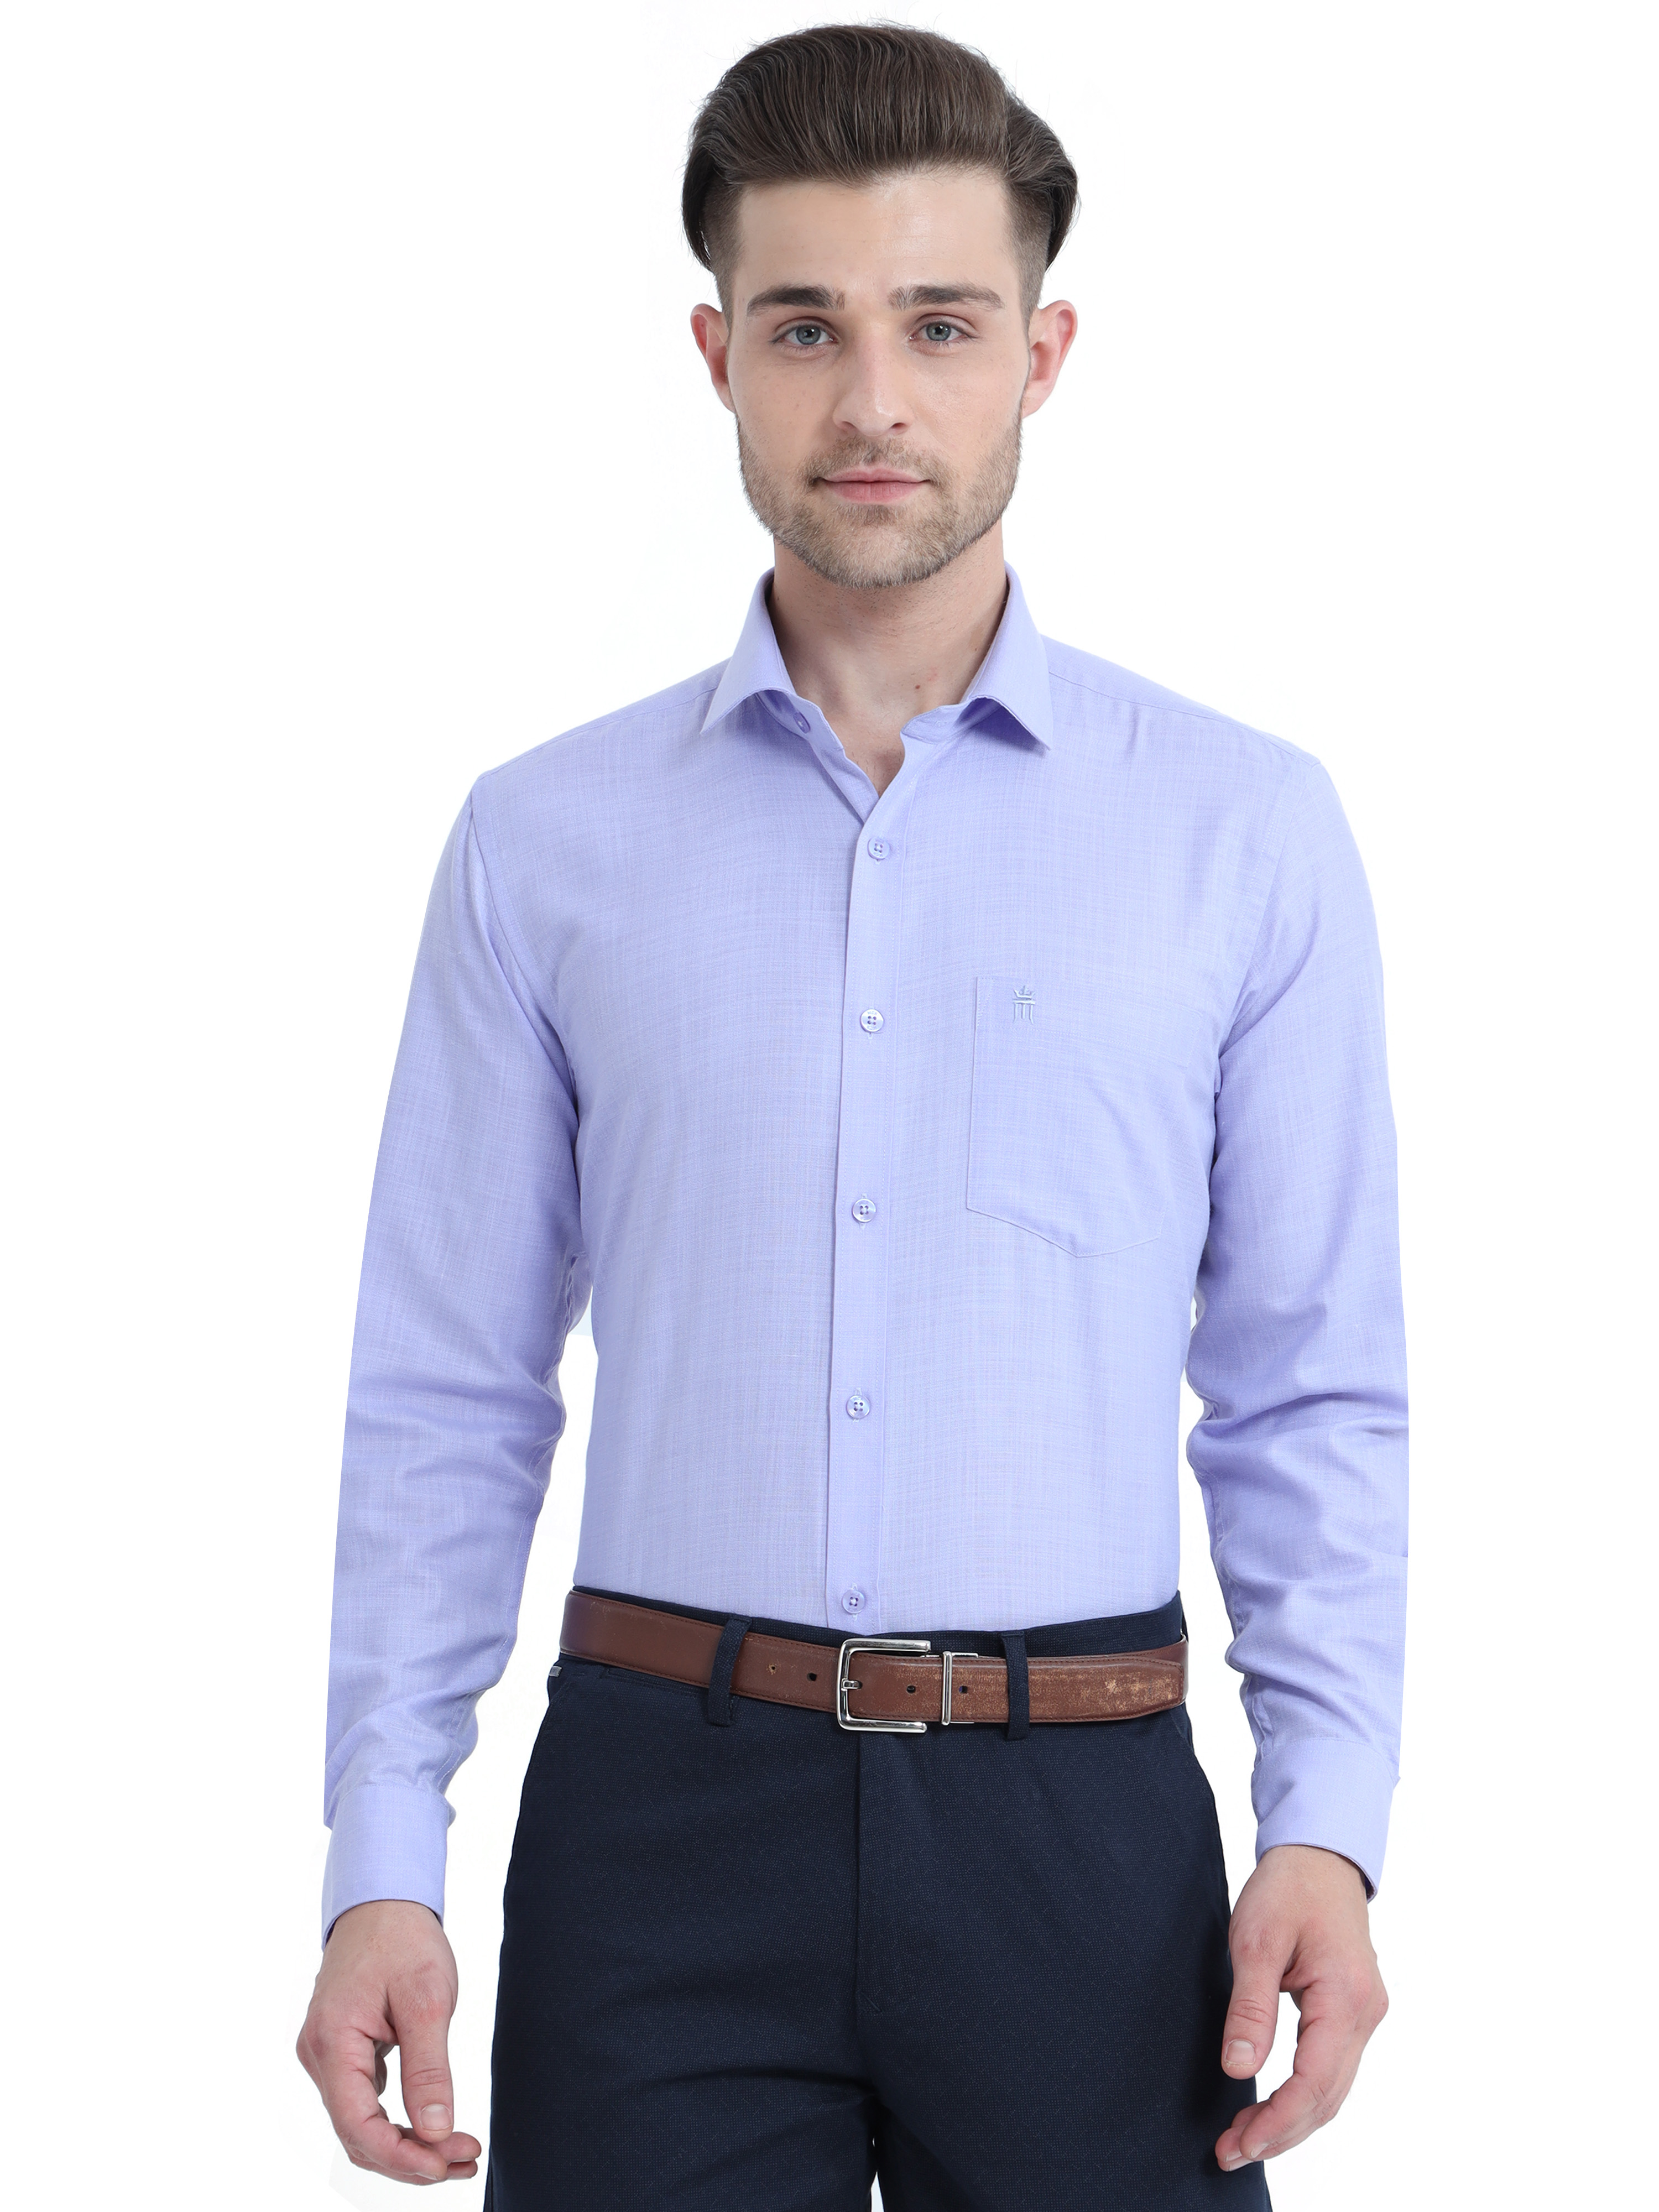 Men's Wrinkle Free Shirt Lavender Colour Full Sleeve